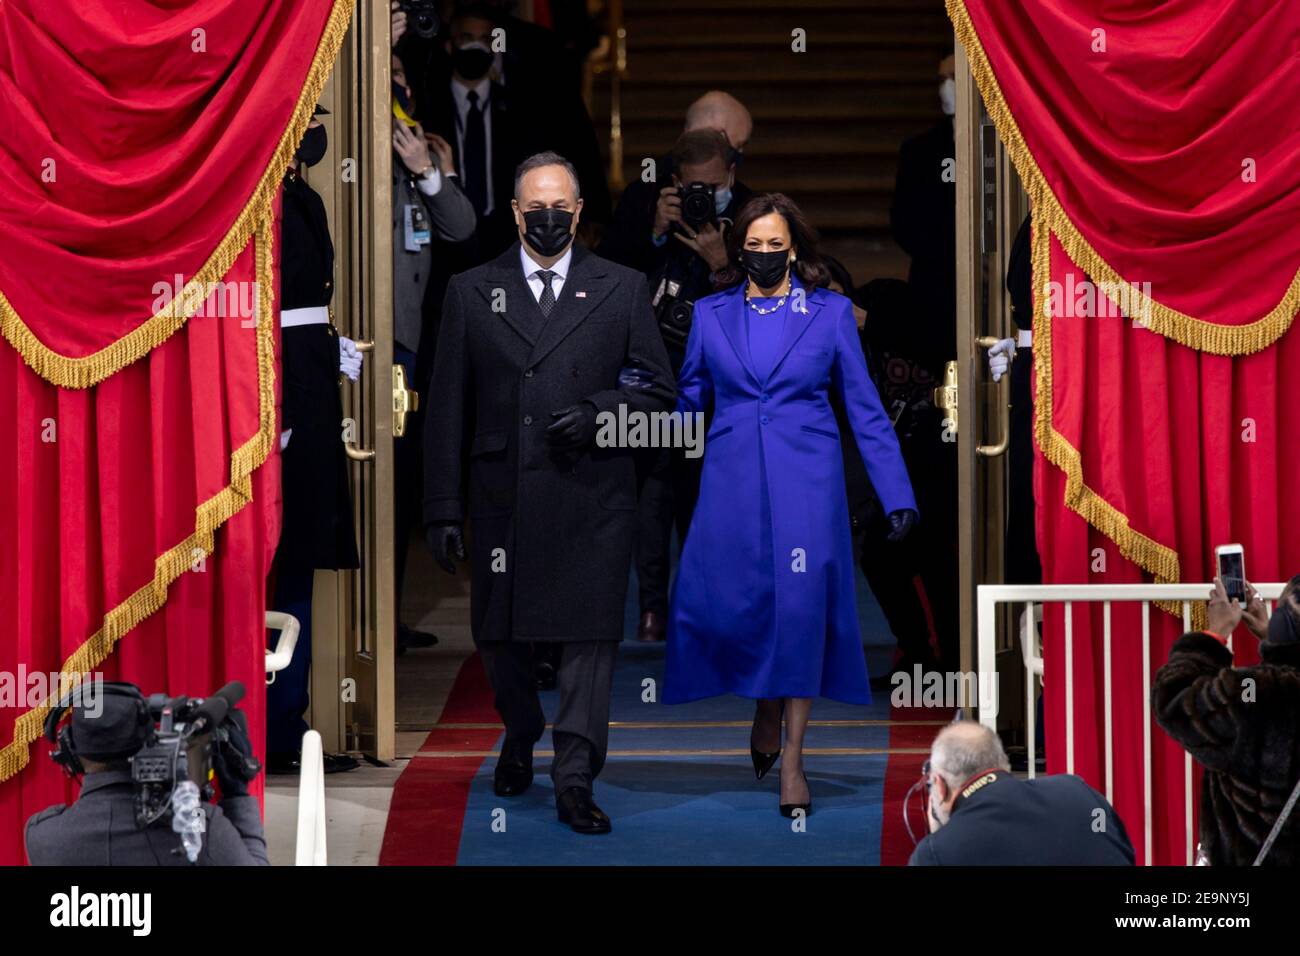 Il vice presidente eletto degli Stati Uniti Kamala Harris e il marito Doug Emhoff arrivano alla piattaforma inaugurale per la 59a cerimonia di inaugurazione presidenziale presso il Campidoglio degli Stati Uniti 20 gennaio 2021 a Washington, DC. Foto Stock